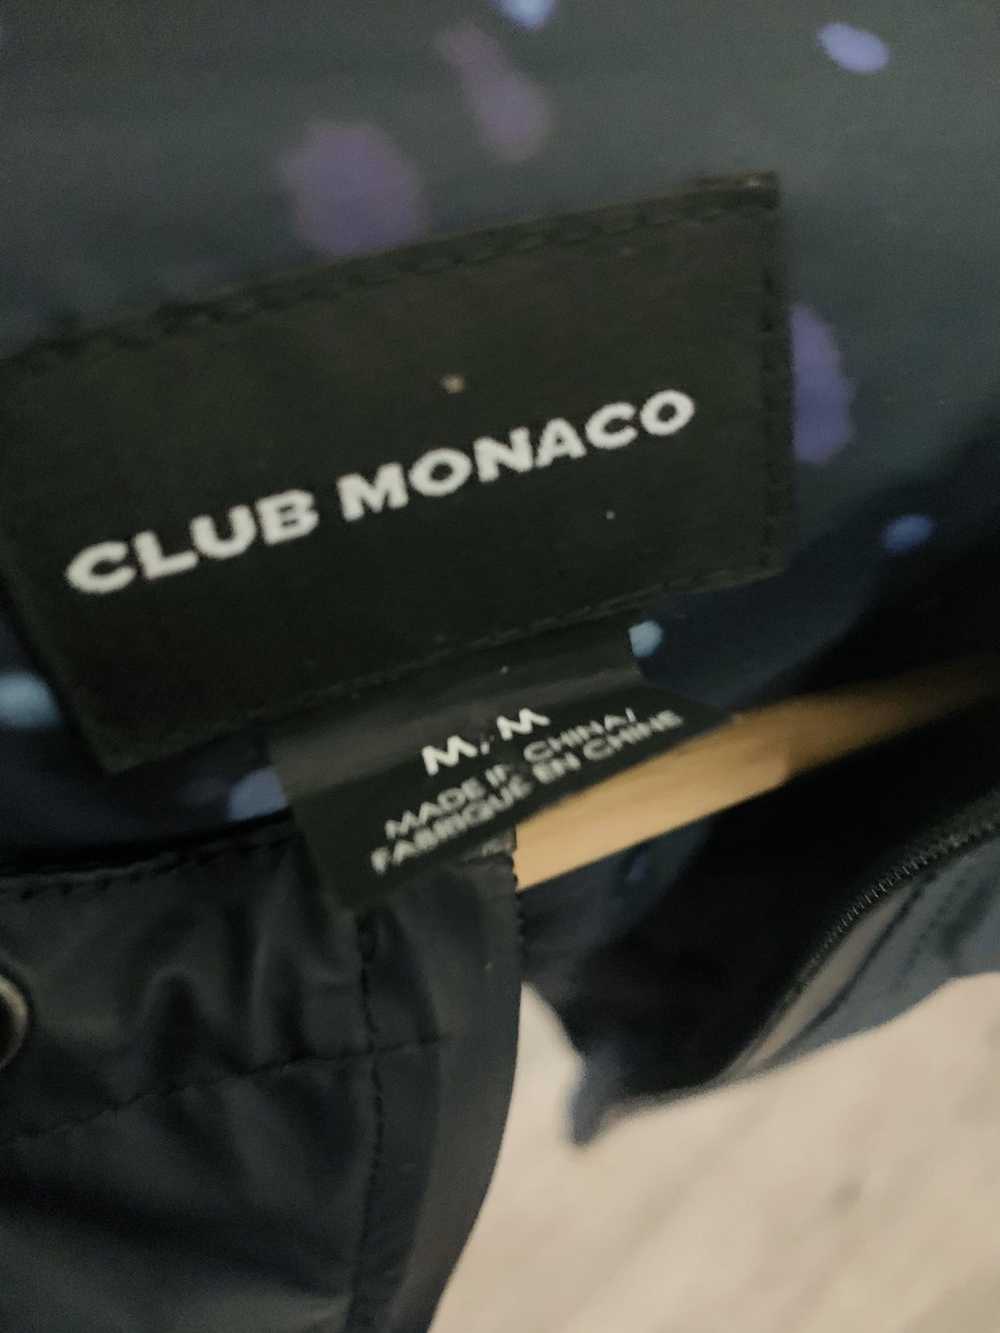 Club Monaco Club Monaco Hooded Raincoat Medium - image 4